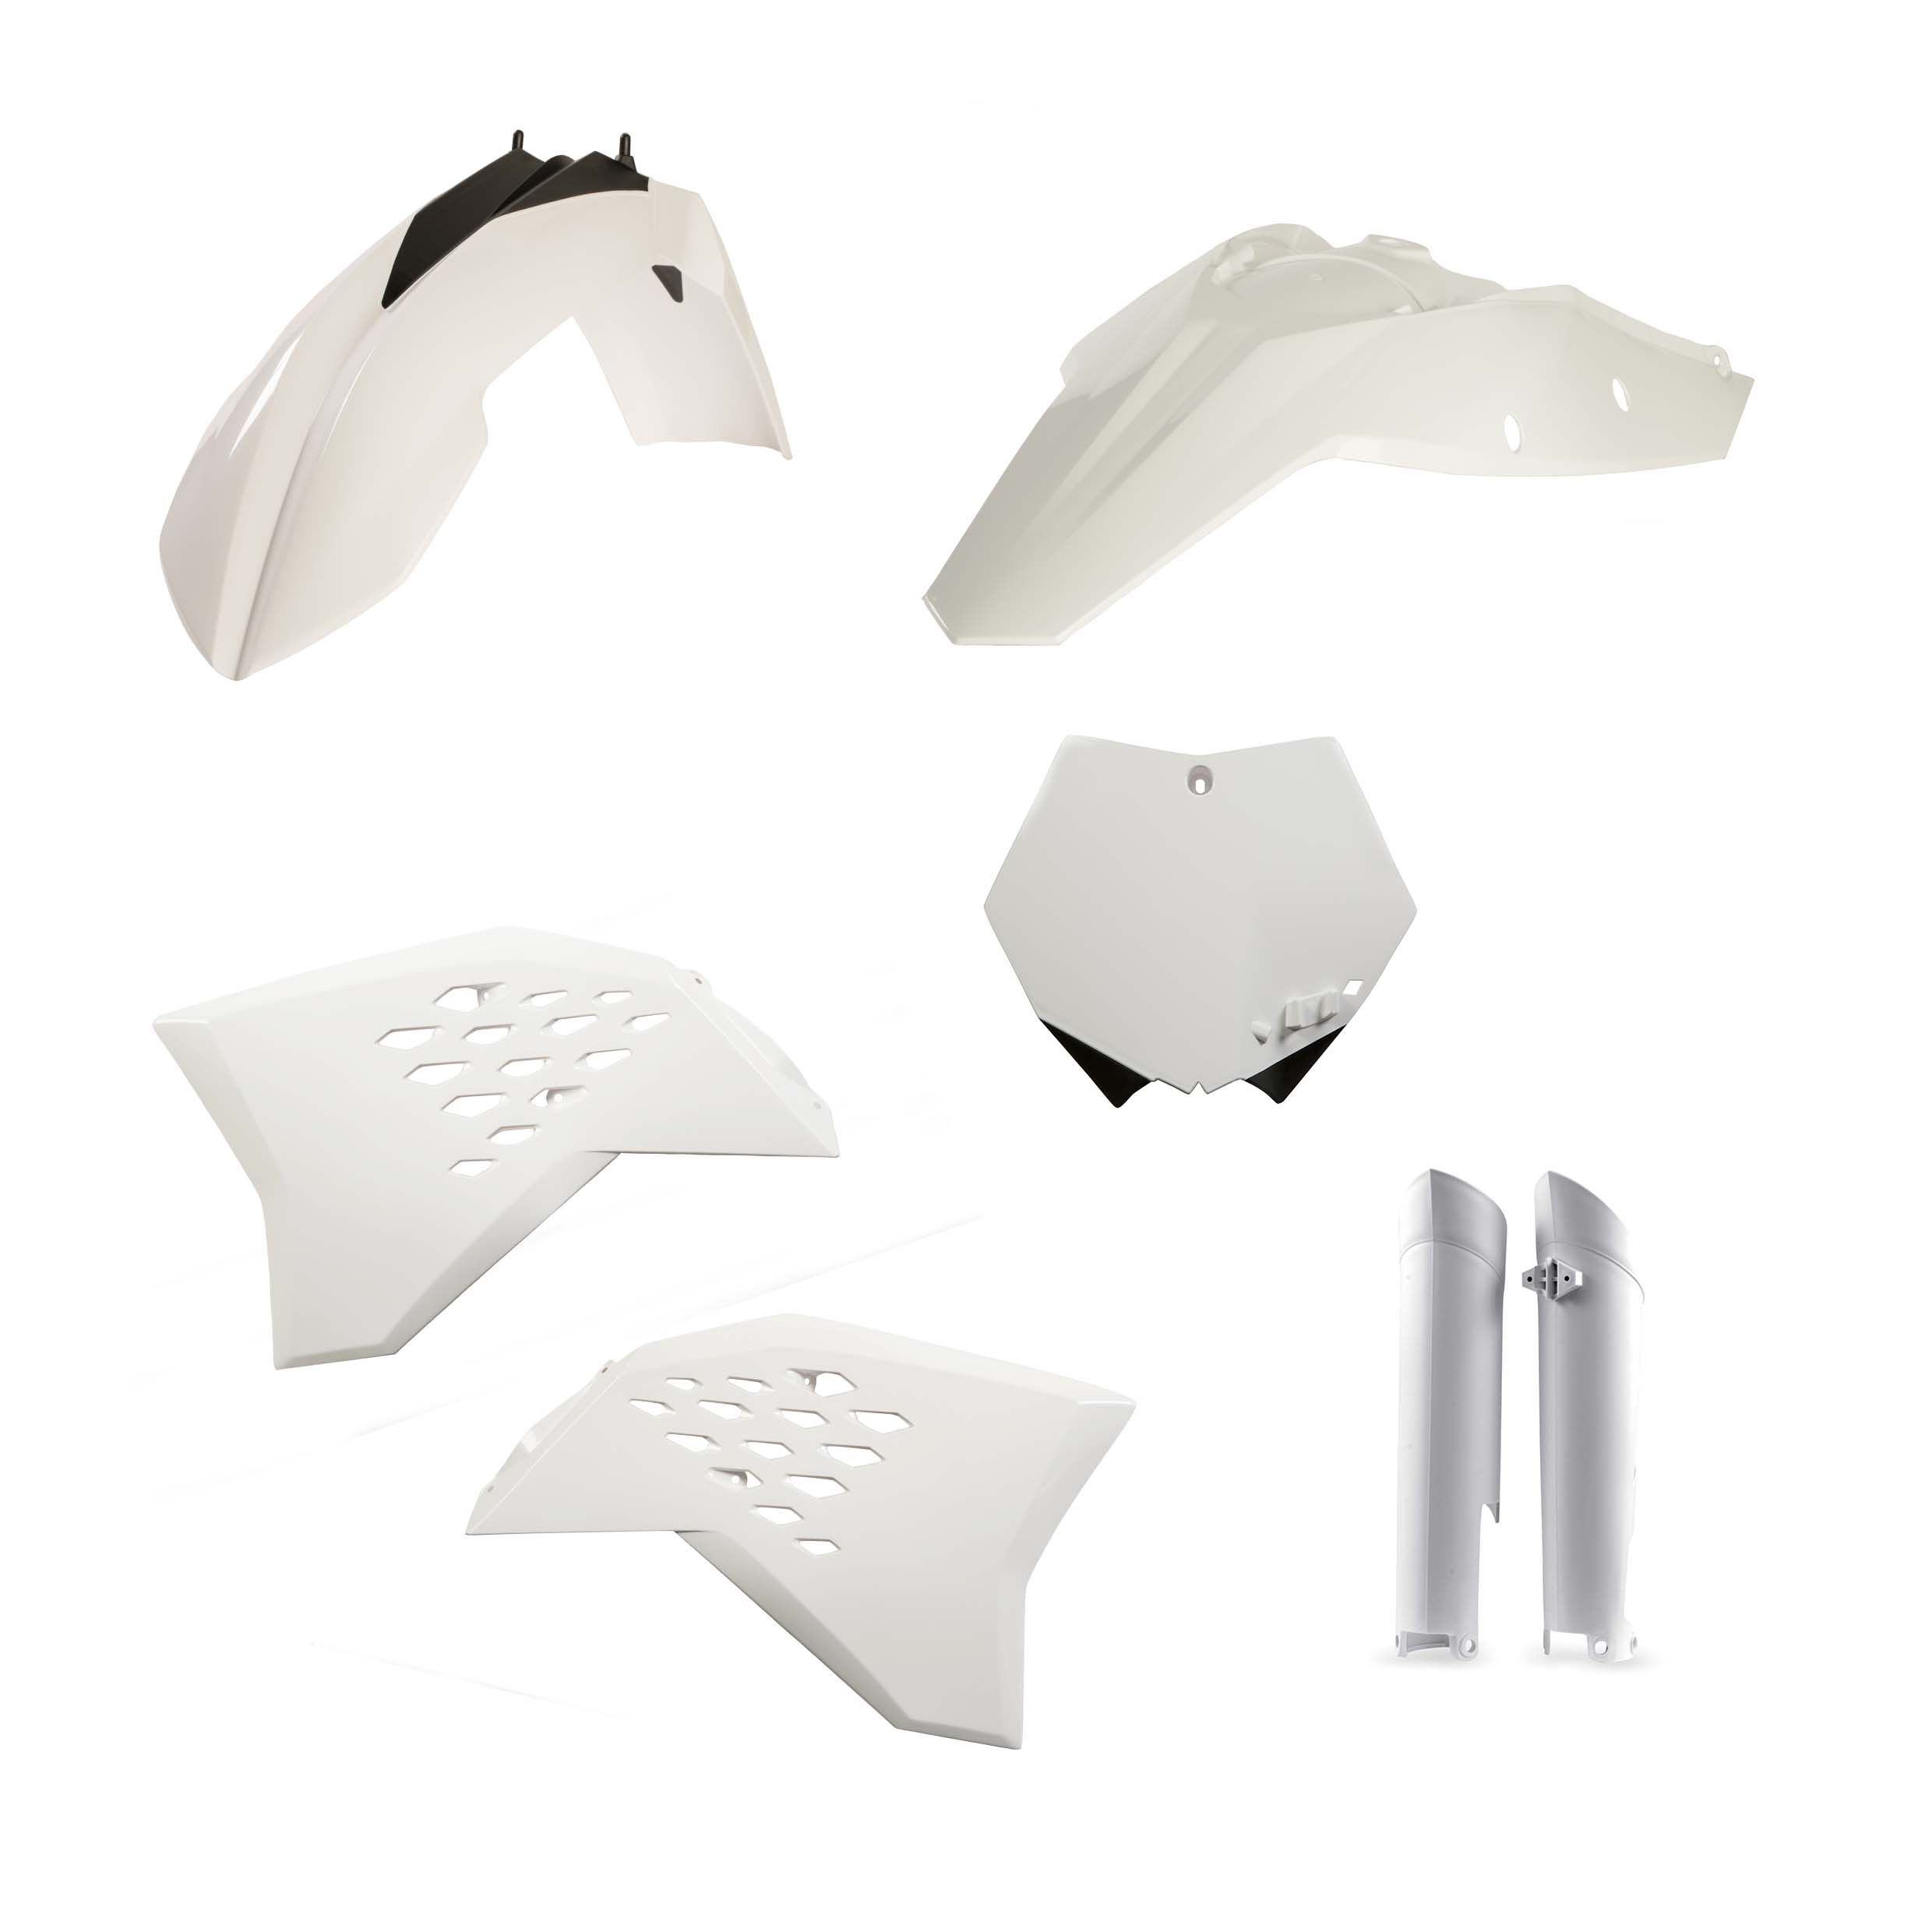 Plastikteile für deine KTM SX / SX-F 250-505 in weiß bestehend aus Kotflügel vorn Kotflügel hinten Kühlerspoiler Seitenteile Gabelschützer Startnummerntafel